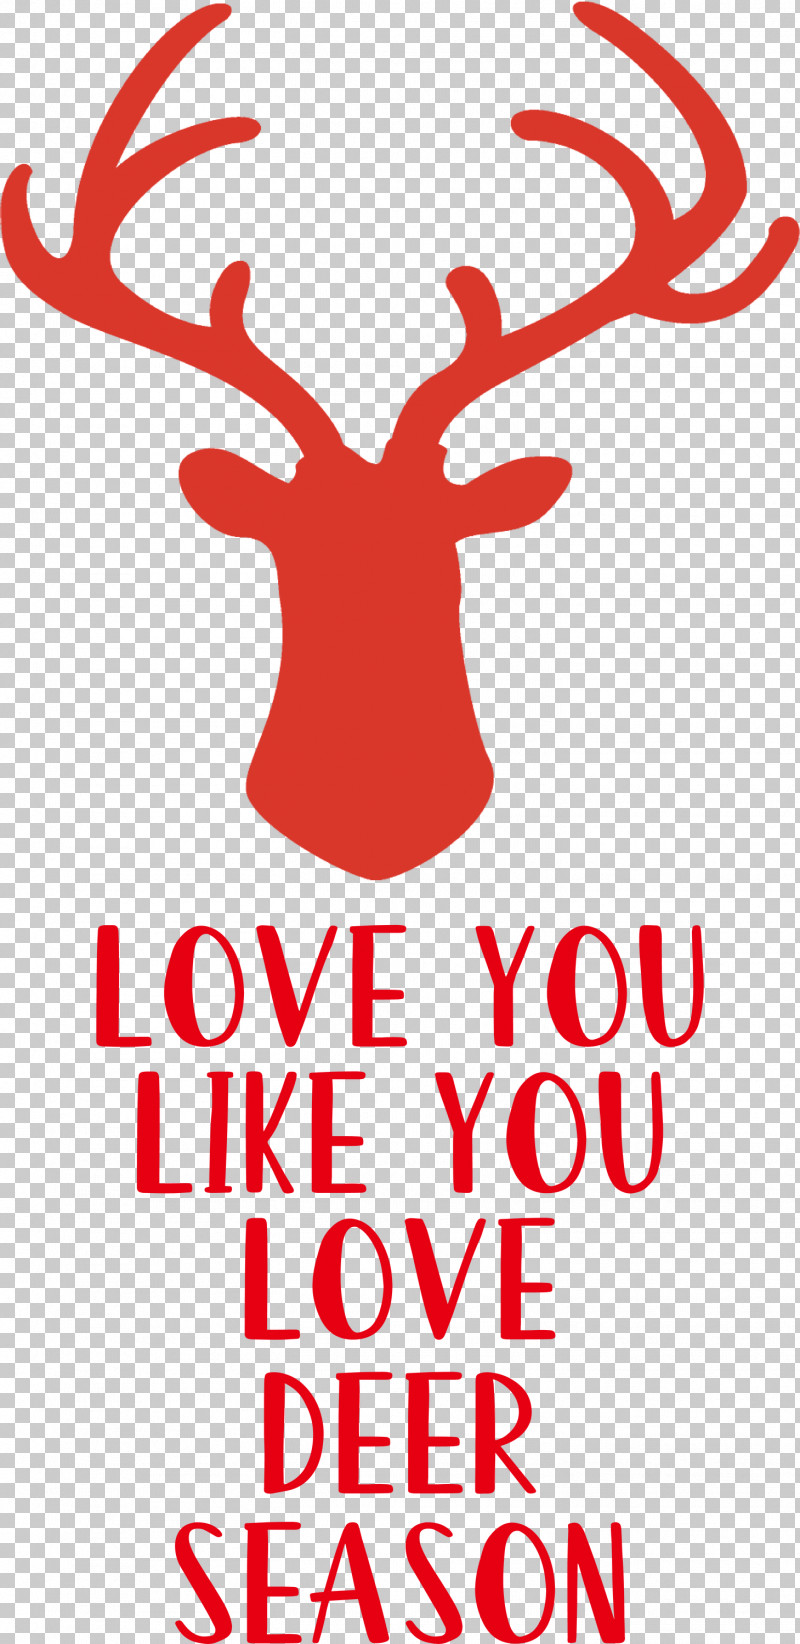 Love Deer Season PNG, Clipart, Antler, Deer, Line, Logo, Love Free PNG Download